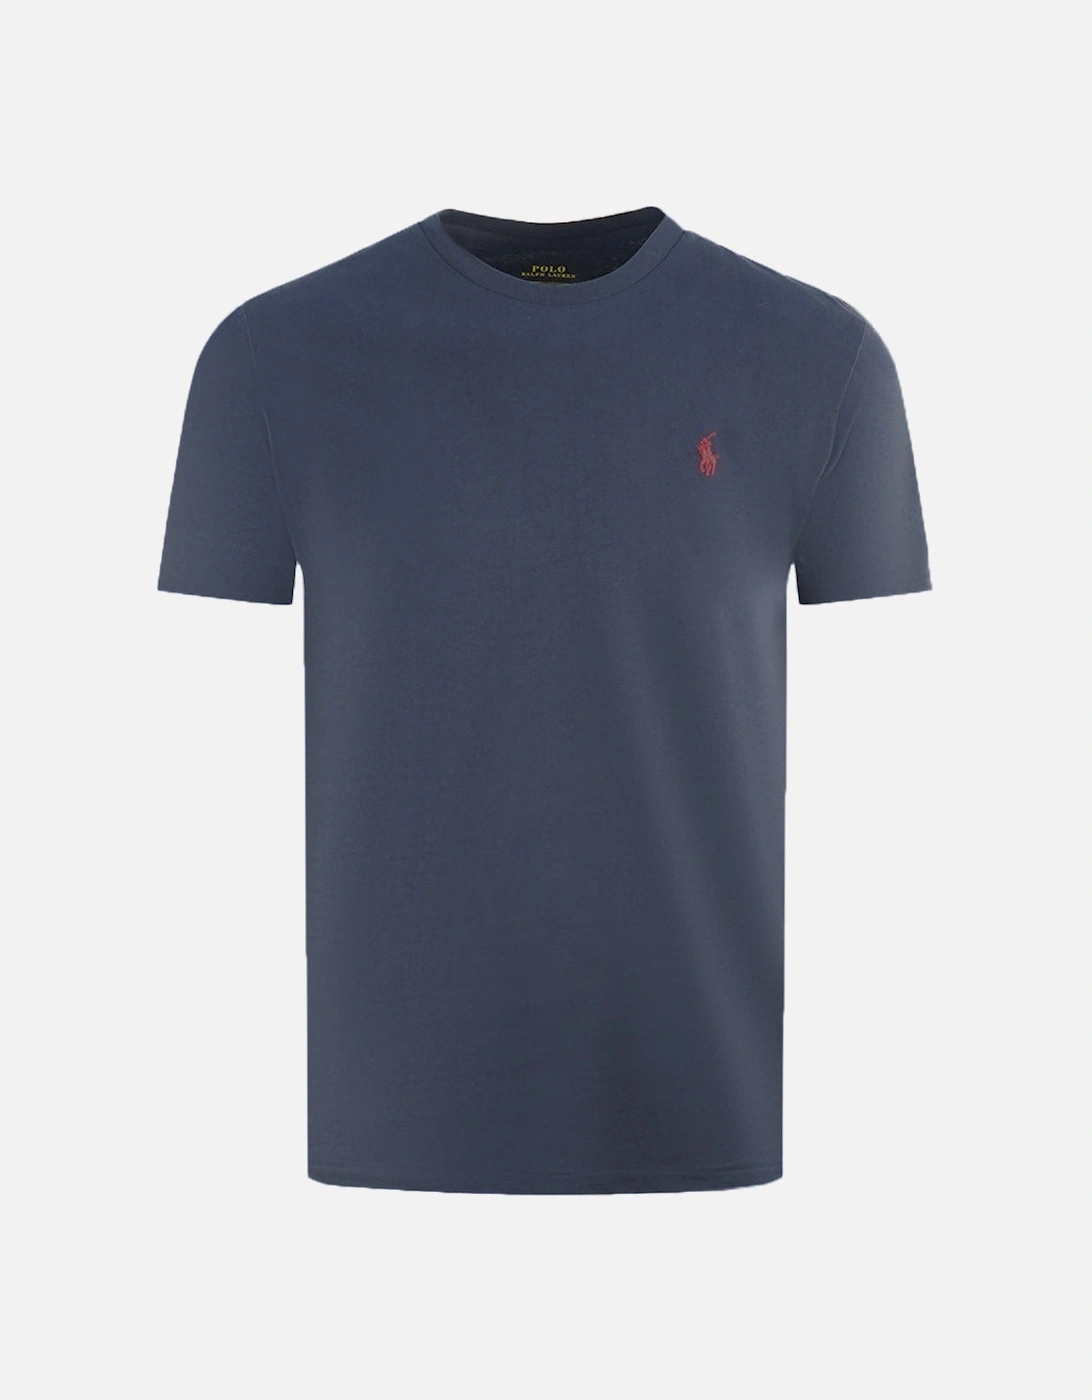 Navy Blue T-Shirt, 2 of 1